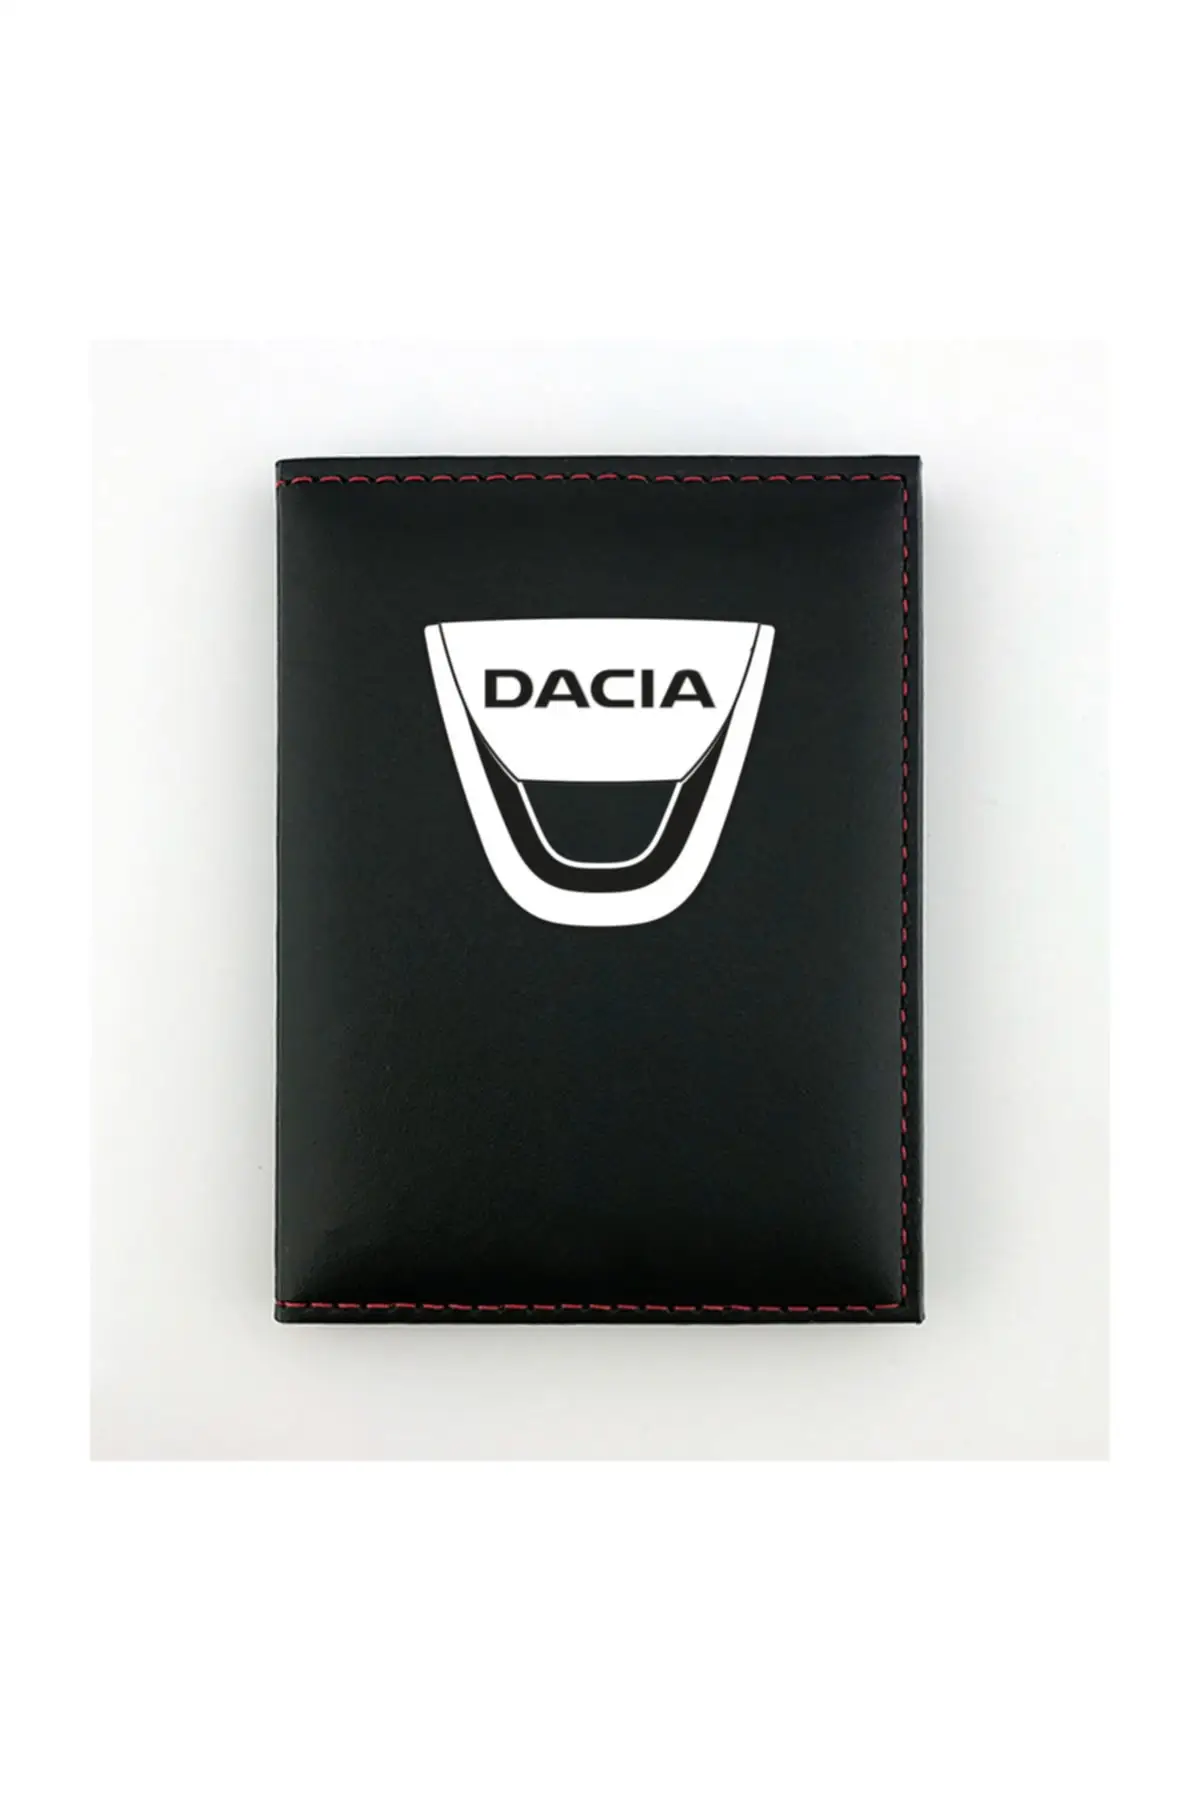 

Dacia Лицензия контейнер унисекс с капюшоном брендовая двойной посадки бумажник чехол-портмоне с отделением для карт прочный светильник водо...